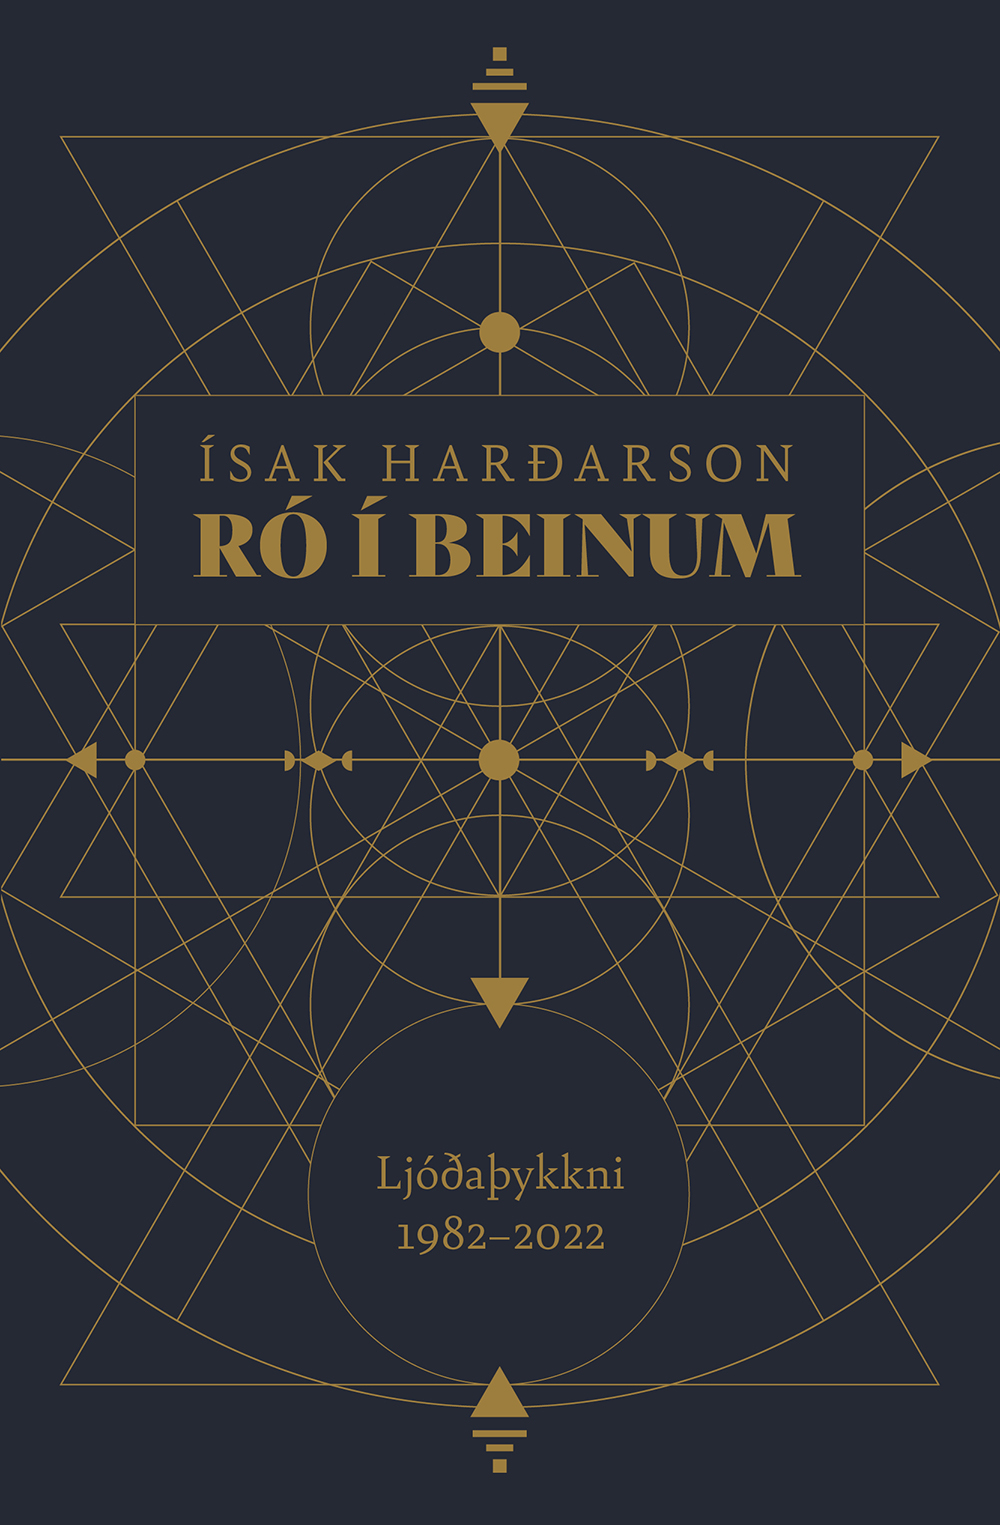 Ró í beinum : Ljóðaþykkni 1982-2022 (Relaxed Bones : Cluster of Poetry 1982-2022)